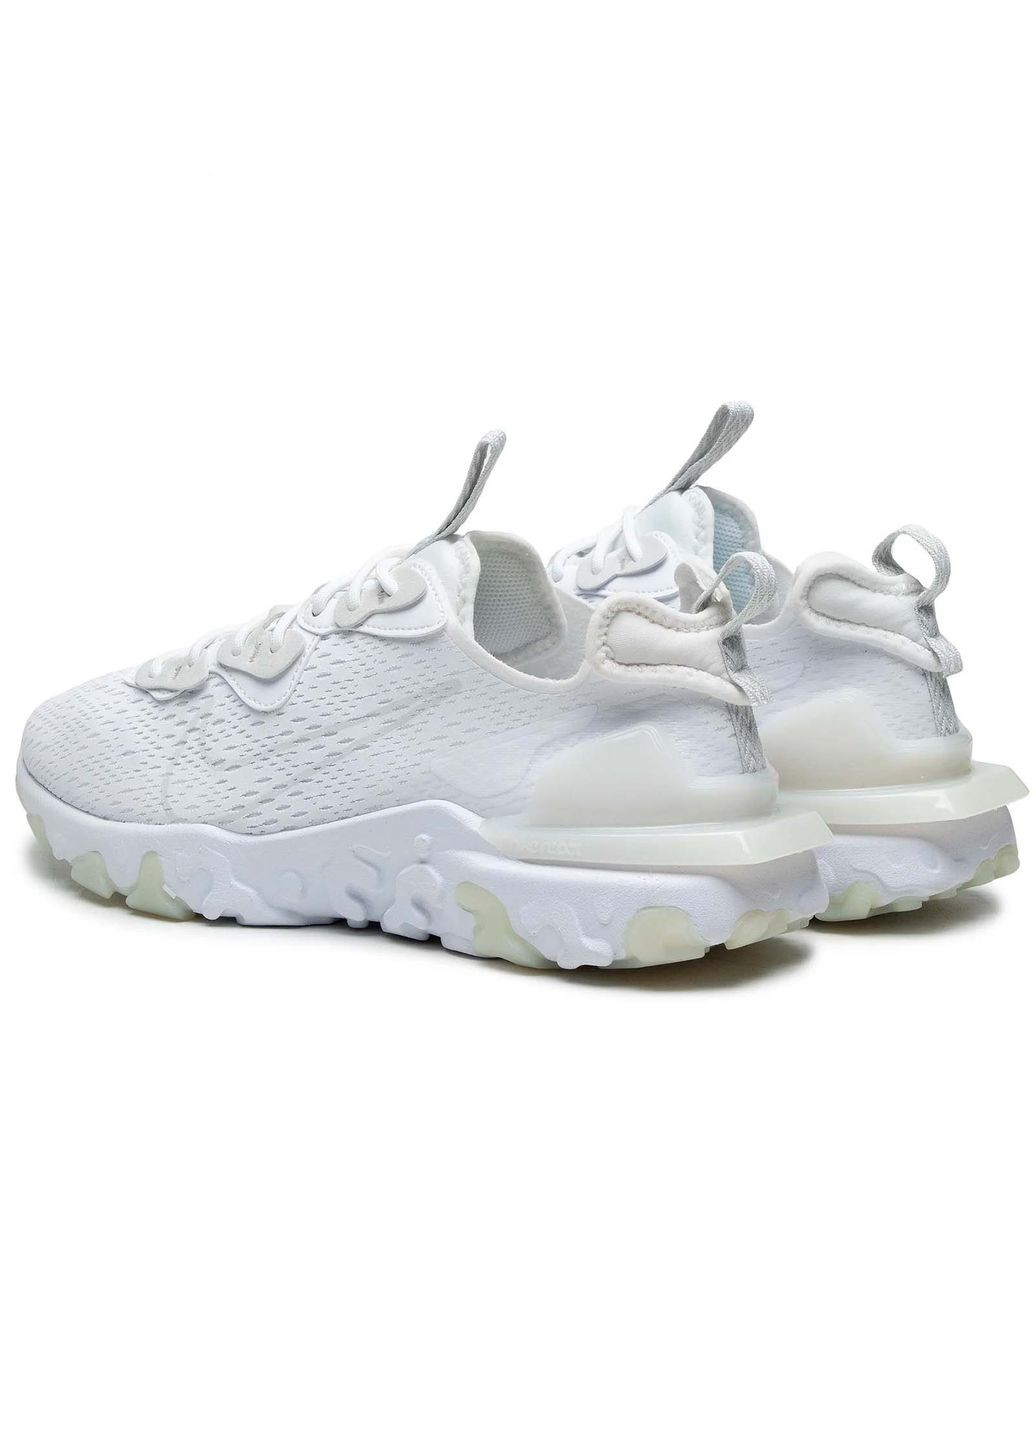 Білі всесезон кросівки чоловічі react vision cd4373-101 весна-літо текстиль сітка білі Nike